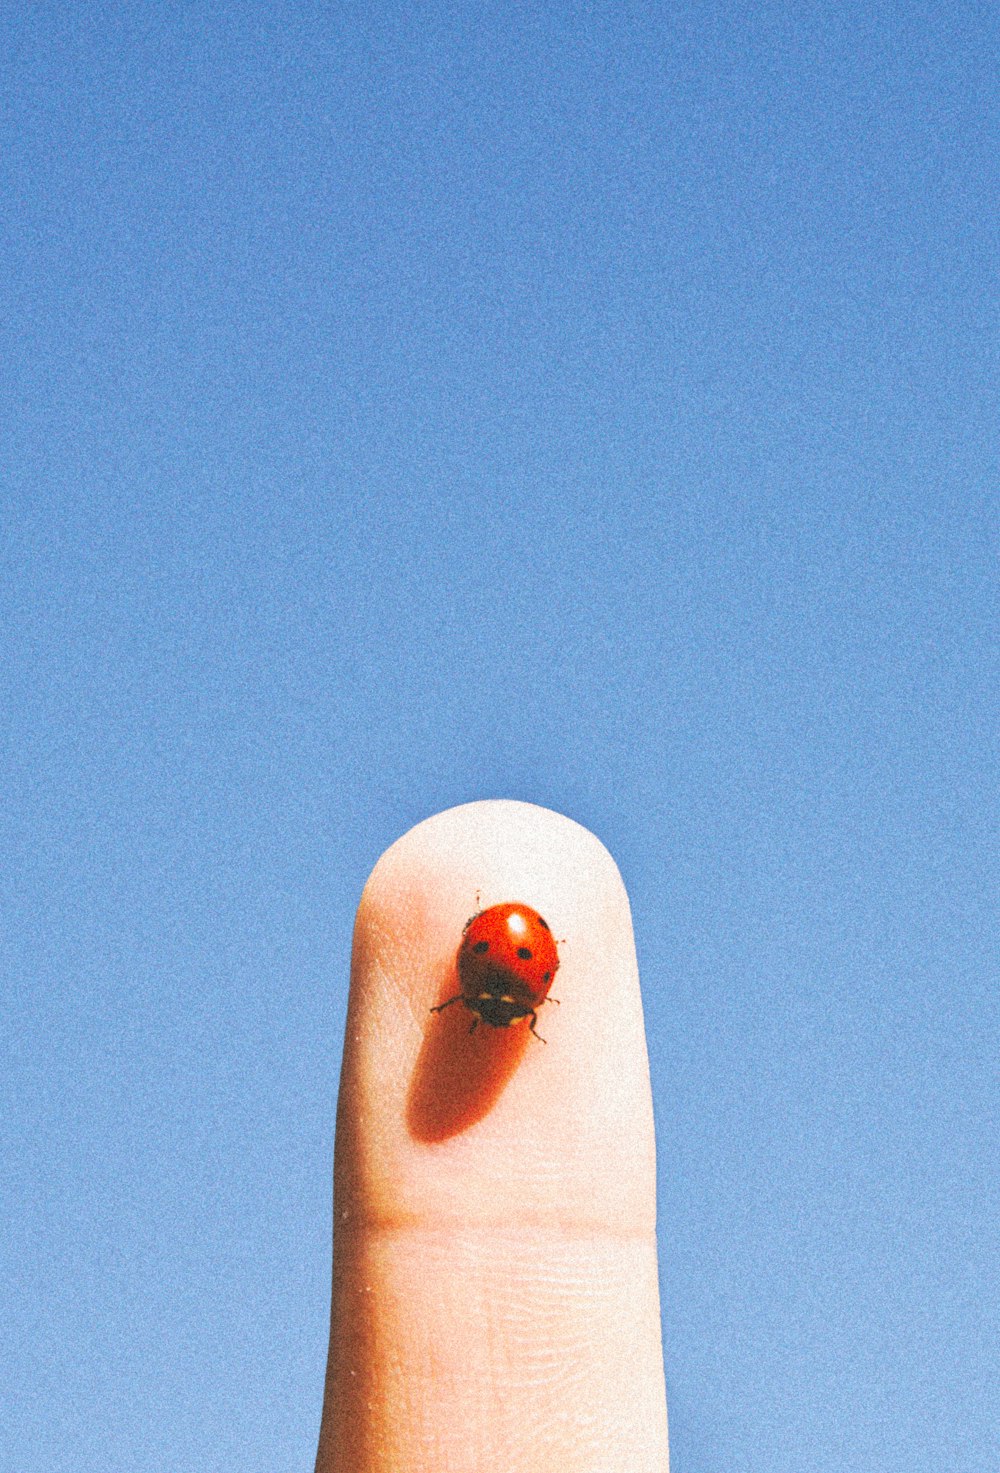 red ladybug on white textile